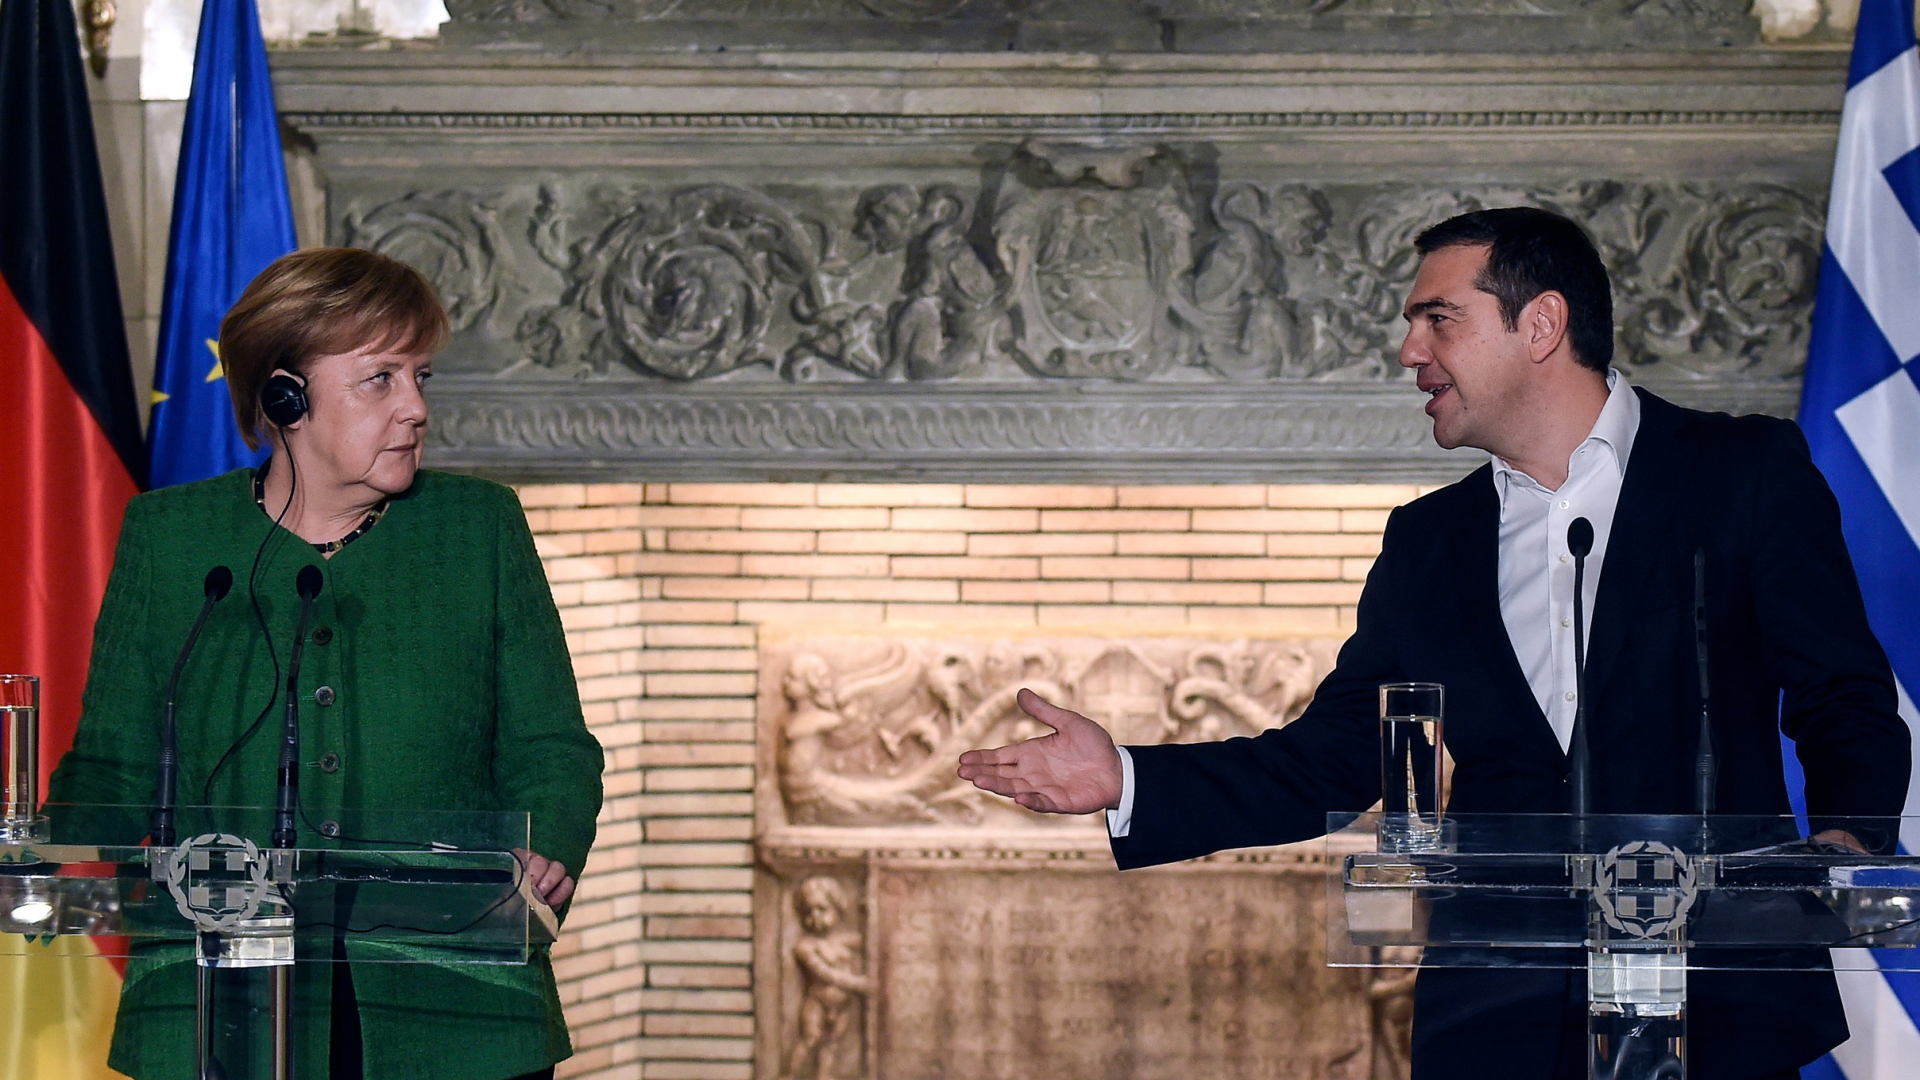 Bundeskanzlerin Angela Merkel und der griechische Ministerpräsident Alexis Tsipras | dpa